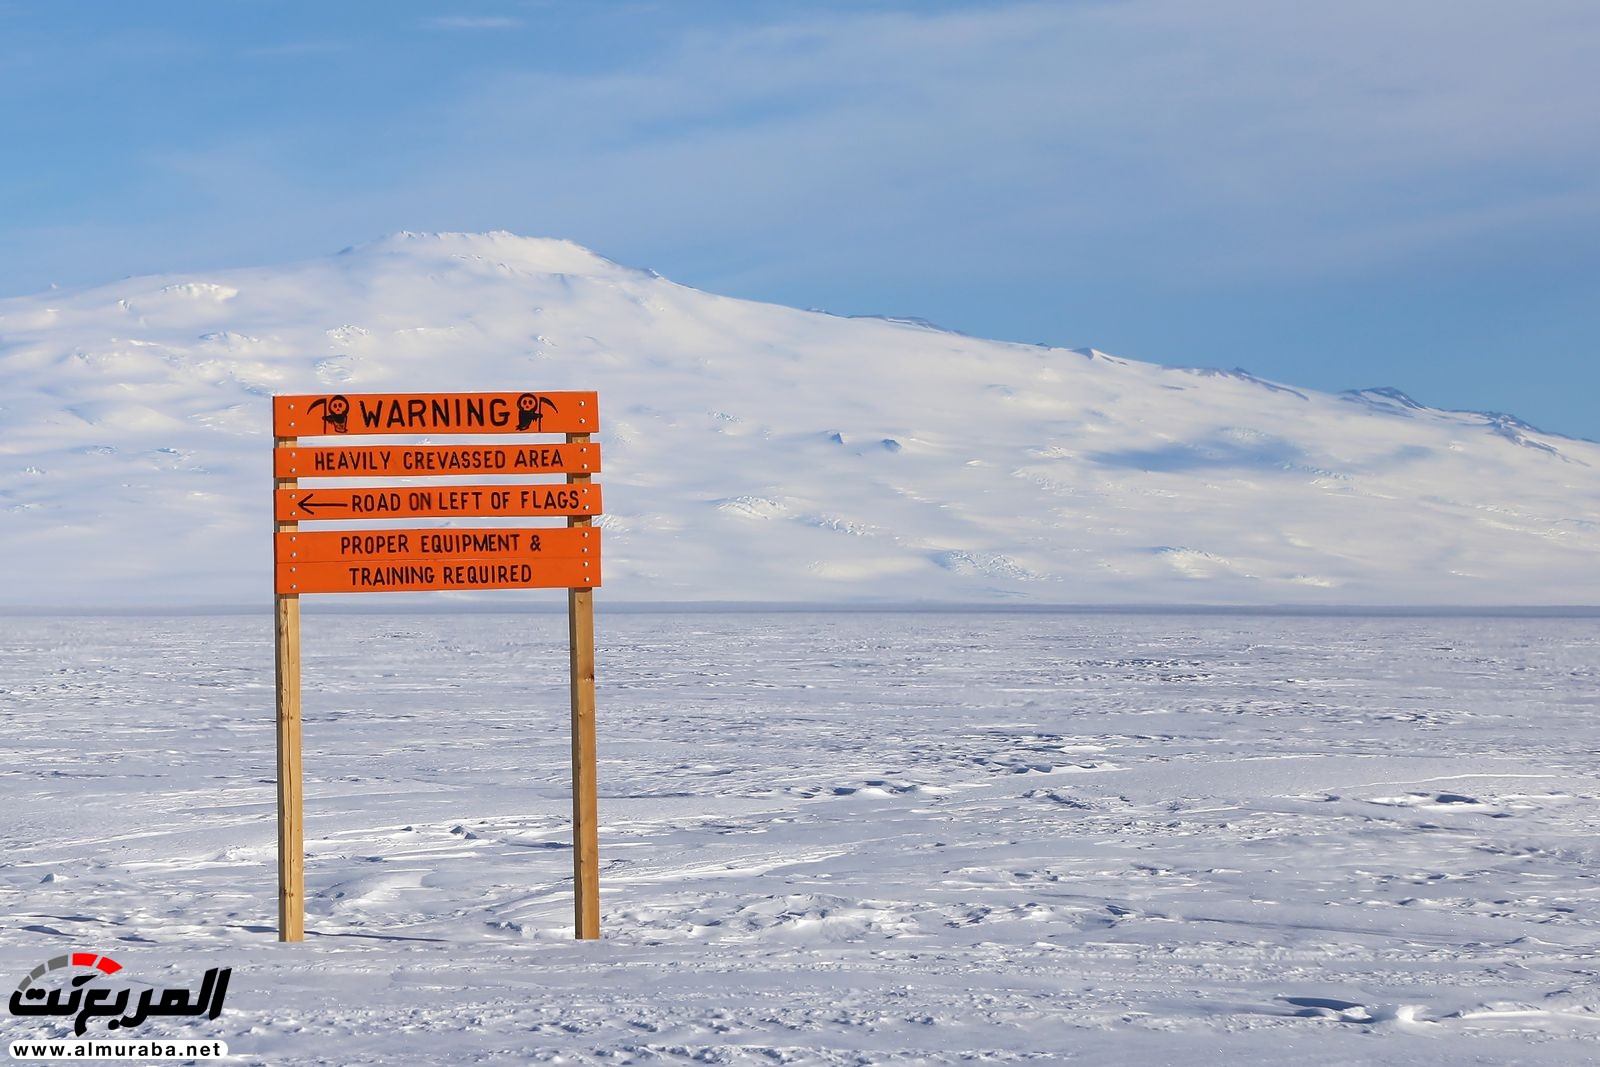 "هيونداي سانتا في" تنجح للمرة الأولى في العالم بإجتياز الكثبان الثلجية في الأنتاركتيكا! 23